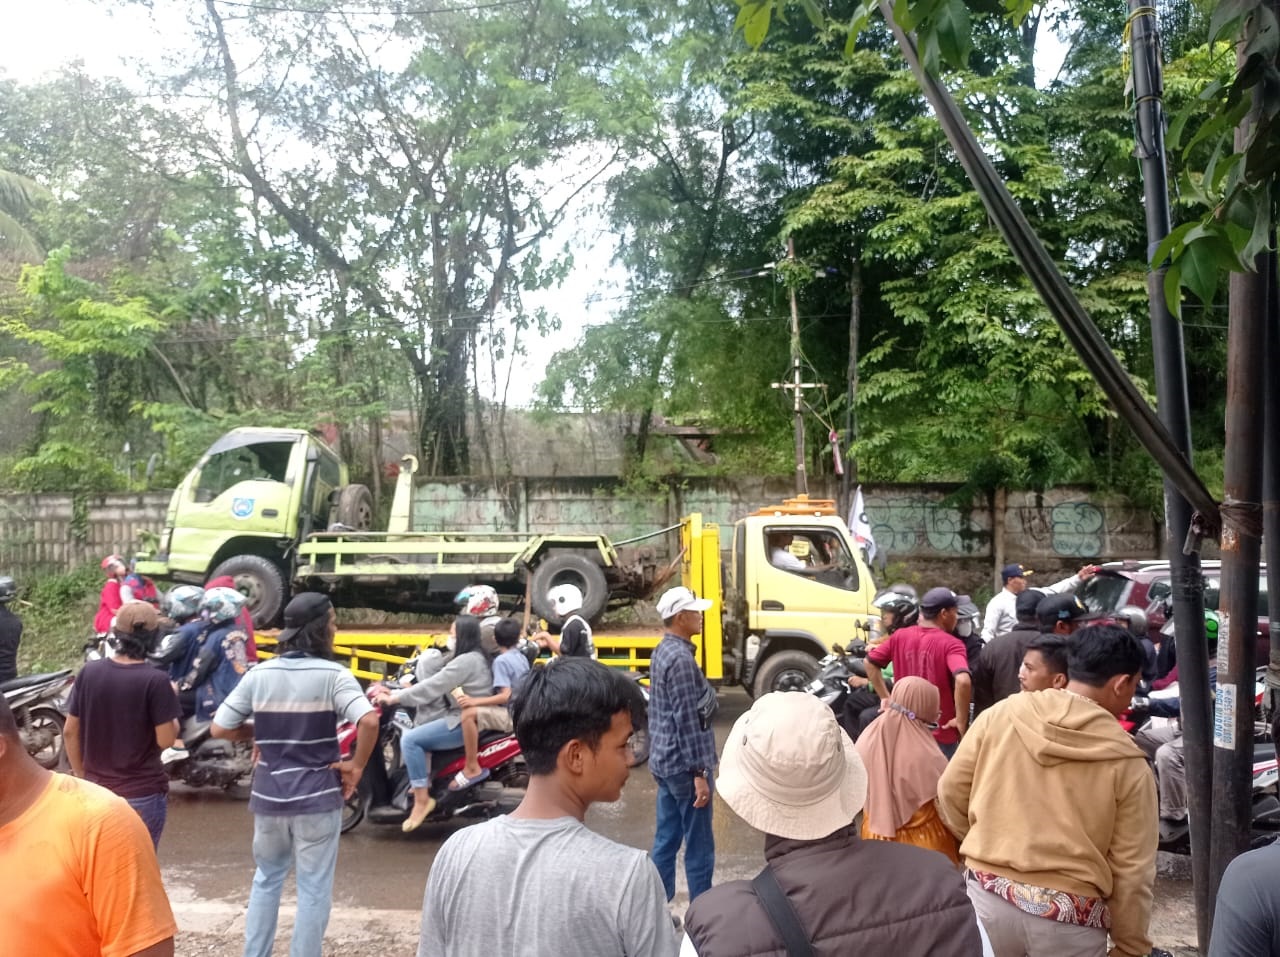 Petugas Dinas Lingkungan Hidup (DLH) Kota Tangsel langsung melakukan evakuasi dan pembersihan terhadap sisa sampah yang diakbat truk sampah terguling, Minggu (14/4). (dra)